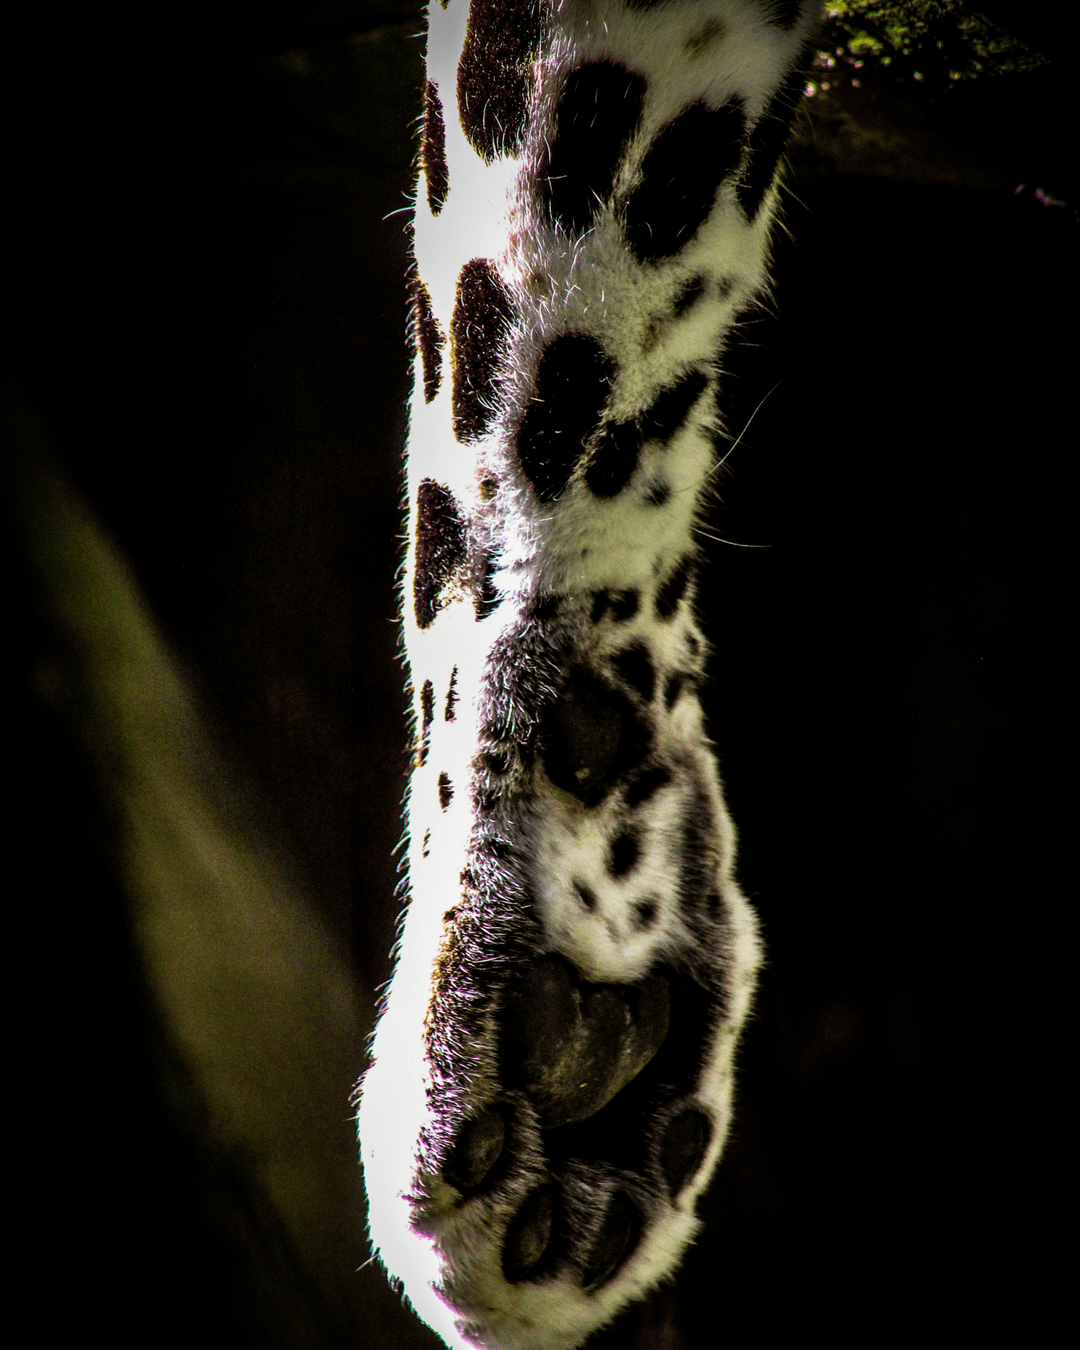 Leopard paw